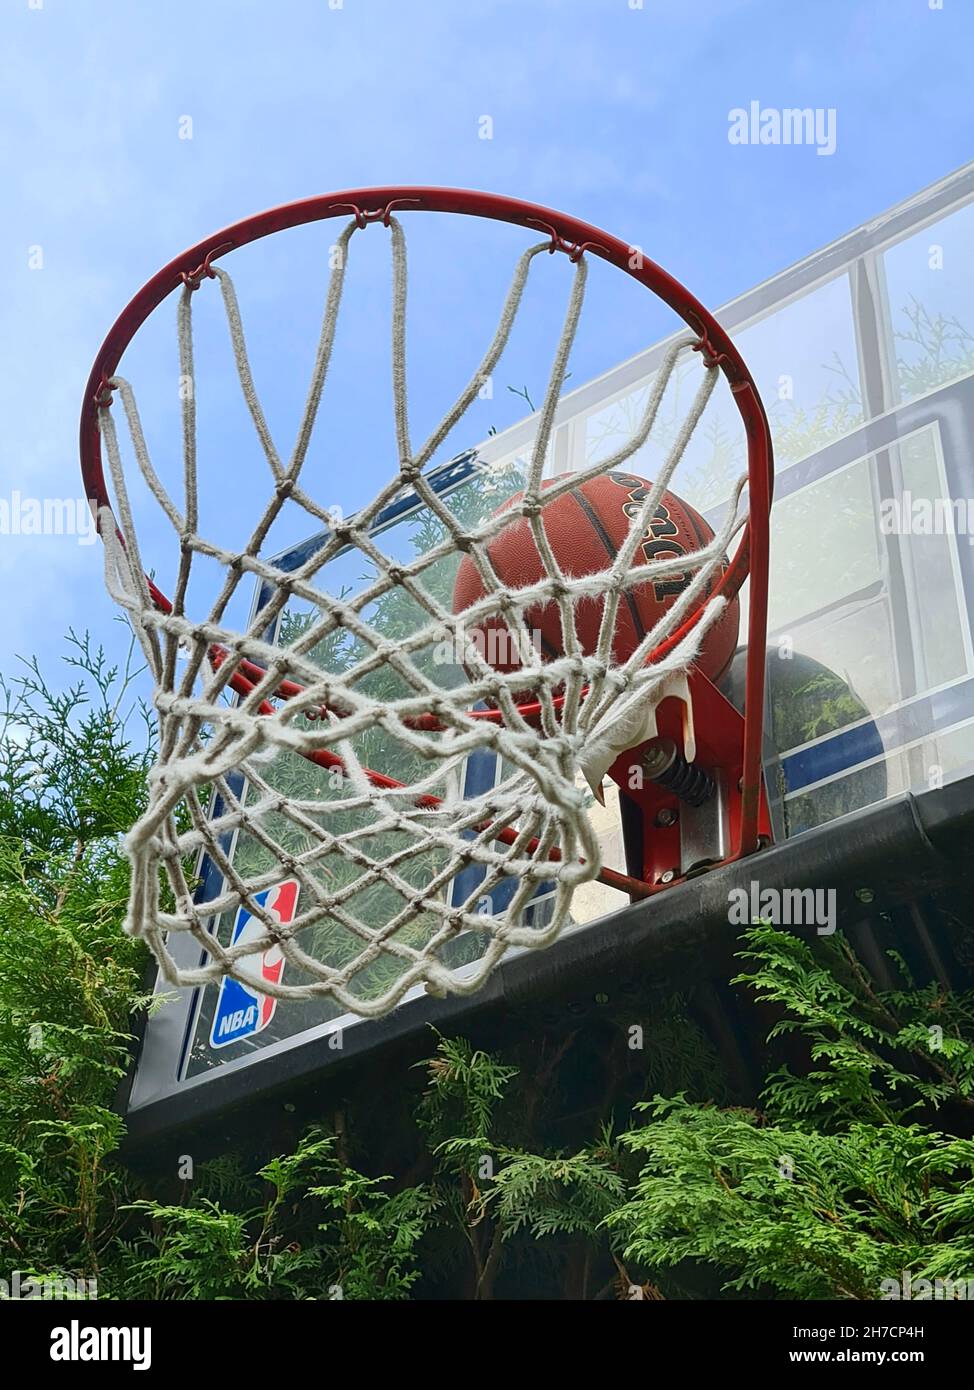 El baloncesto es lanzado en la cesta Foto de stock